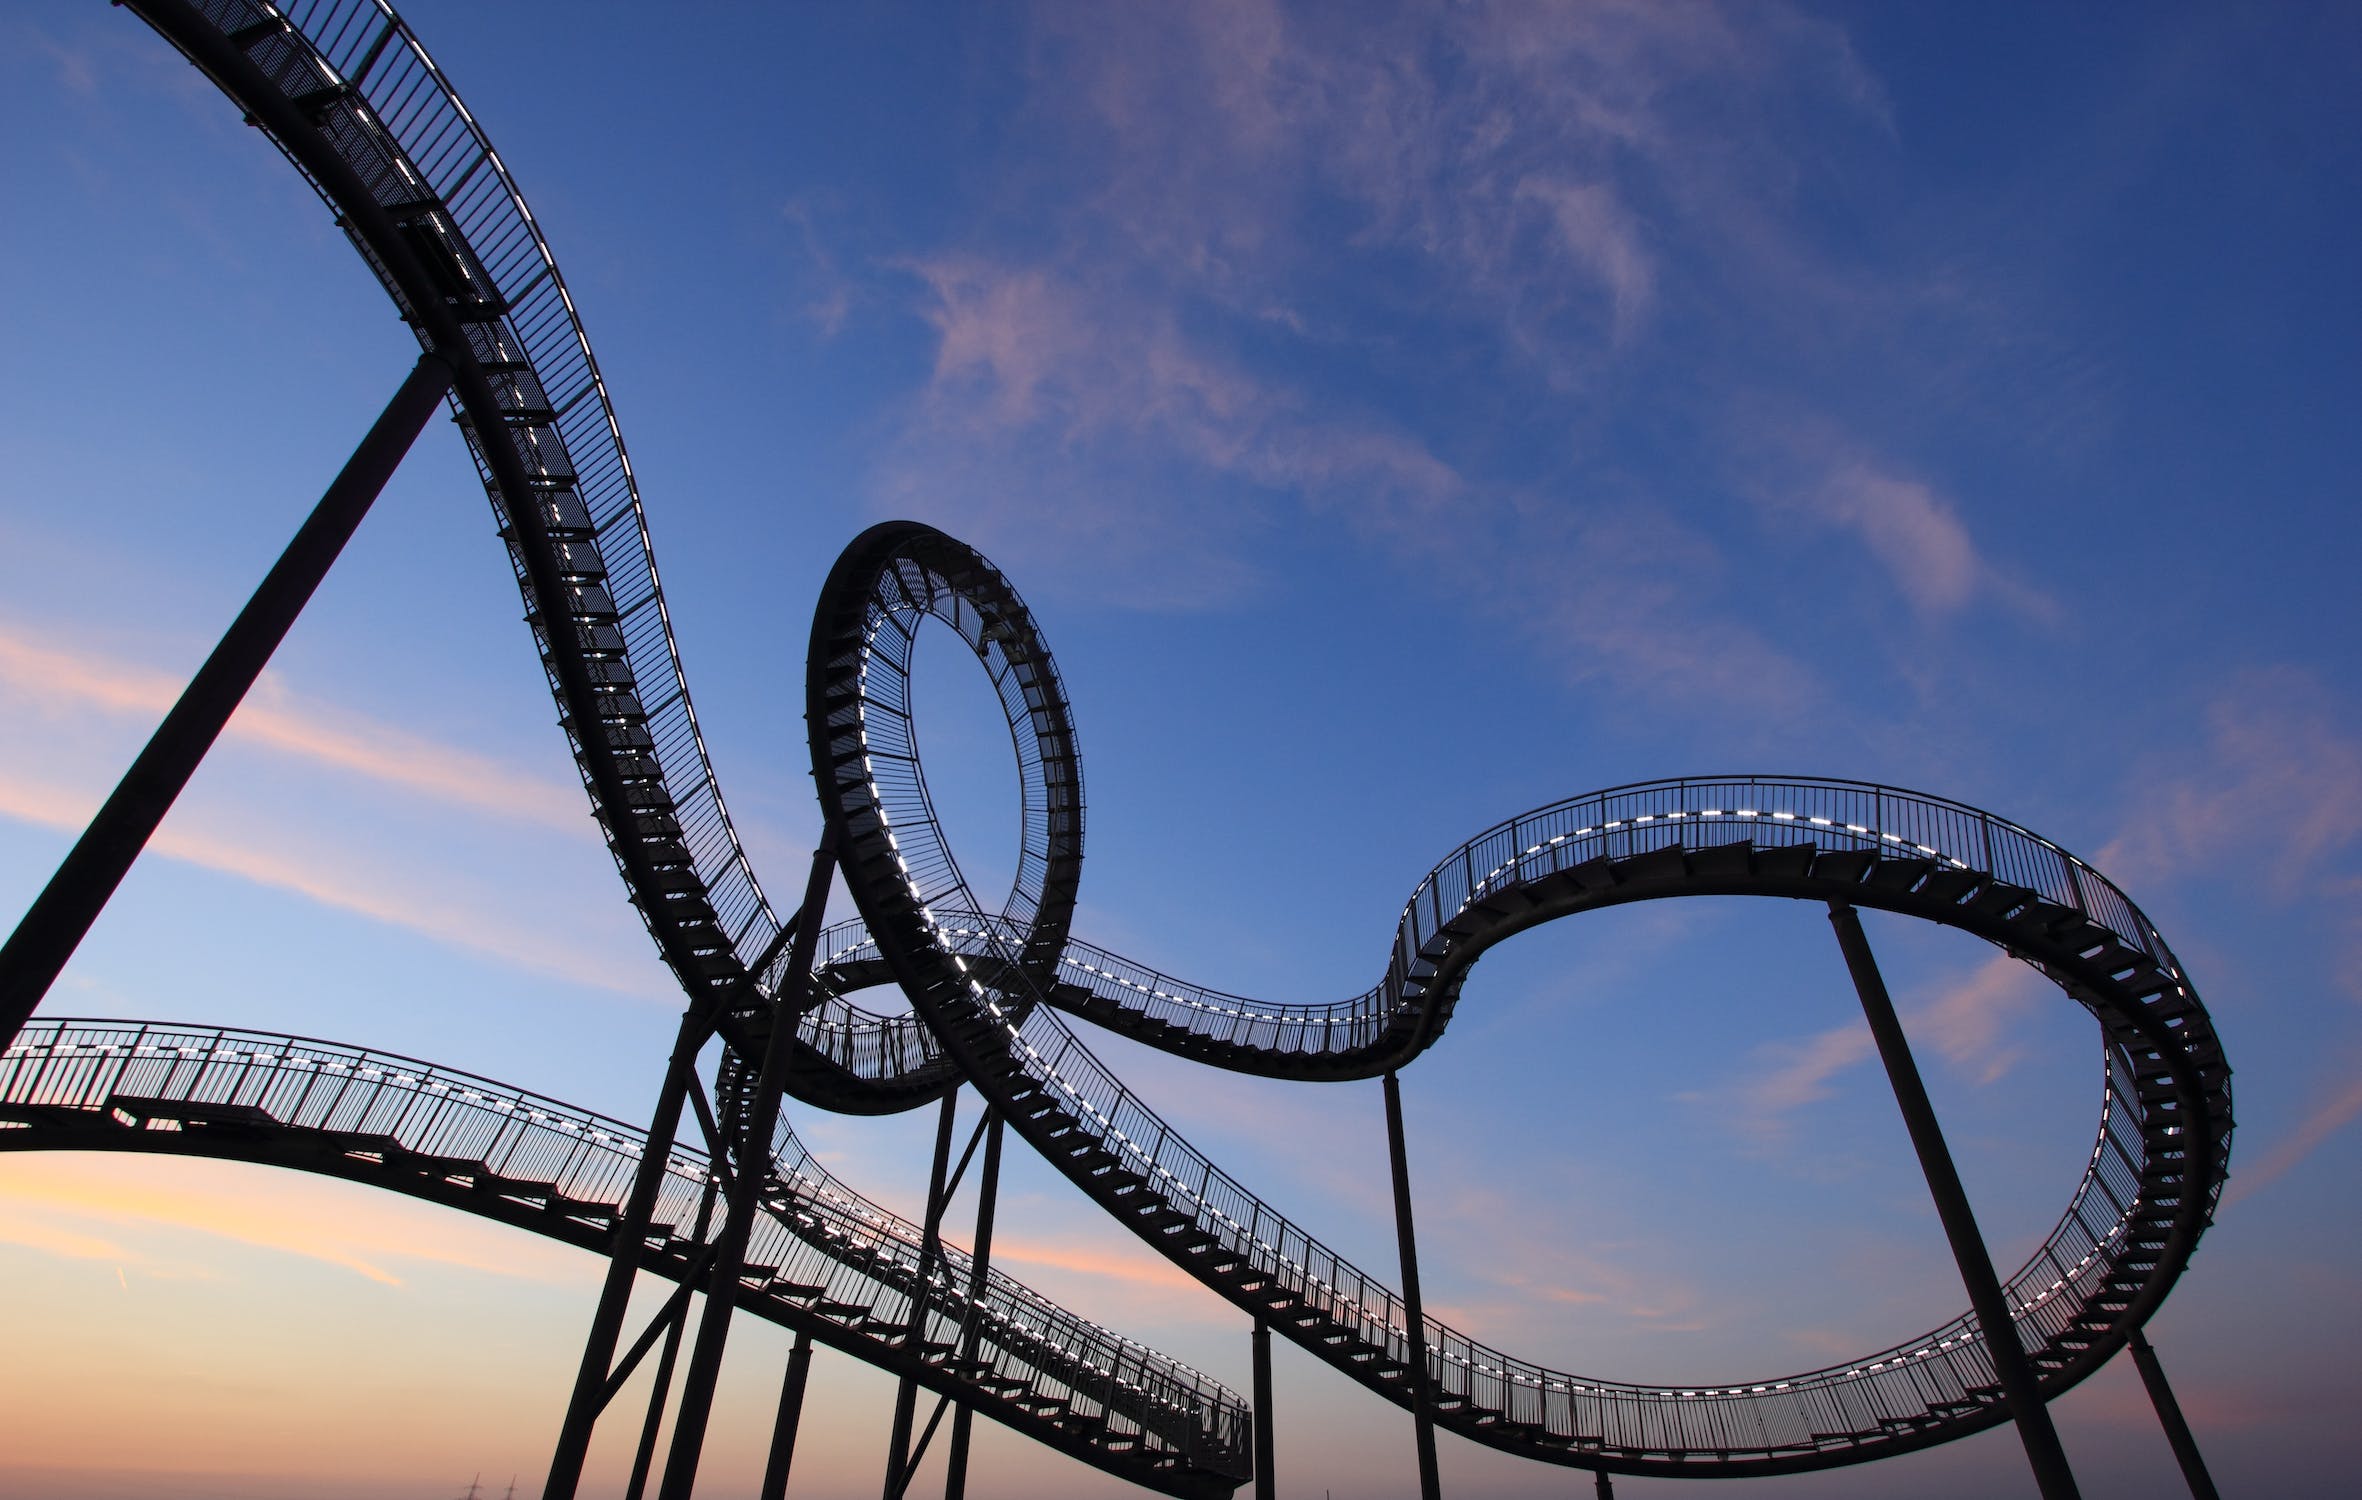 Roller Coaster Photo